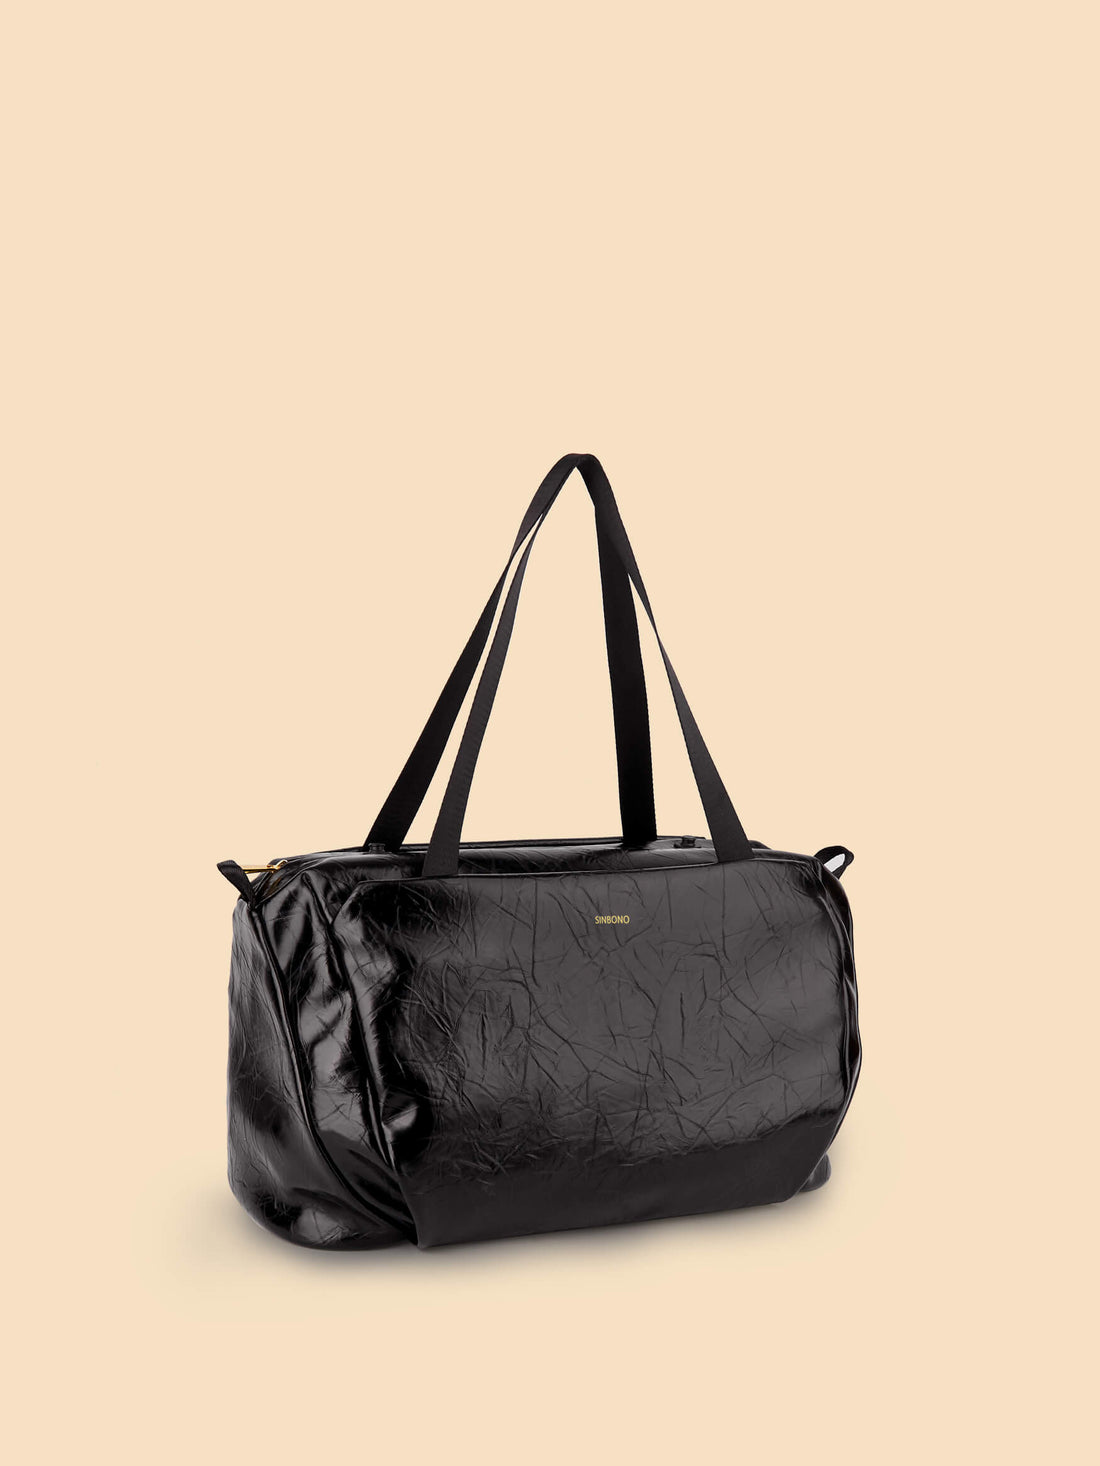 SINBONO Ecozen Multi-Purpose Yogi Bag  Black